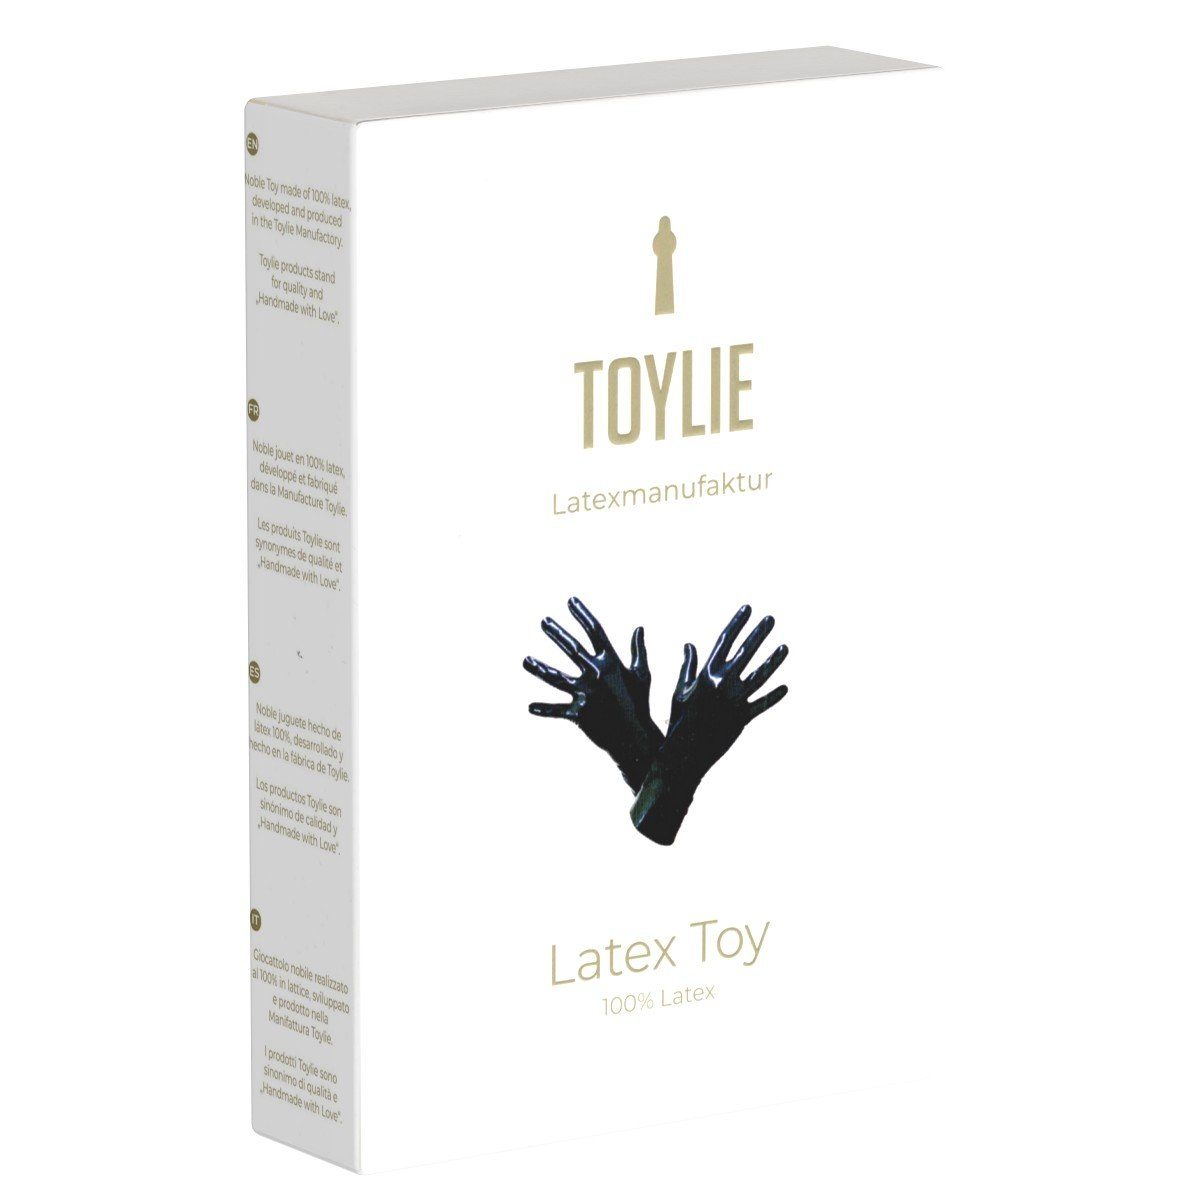 Toylie Latexhandschuhe Toylie Latex Handschuhe (talkumiert, für hohen Tragekomfort, 1 Paar, wiederverwendbare Latexhandschuhe) schwarz, nahtlos, mit anatomischer Passform